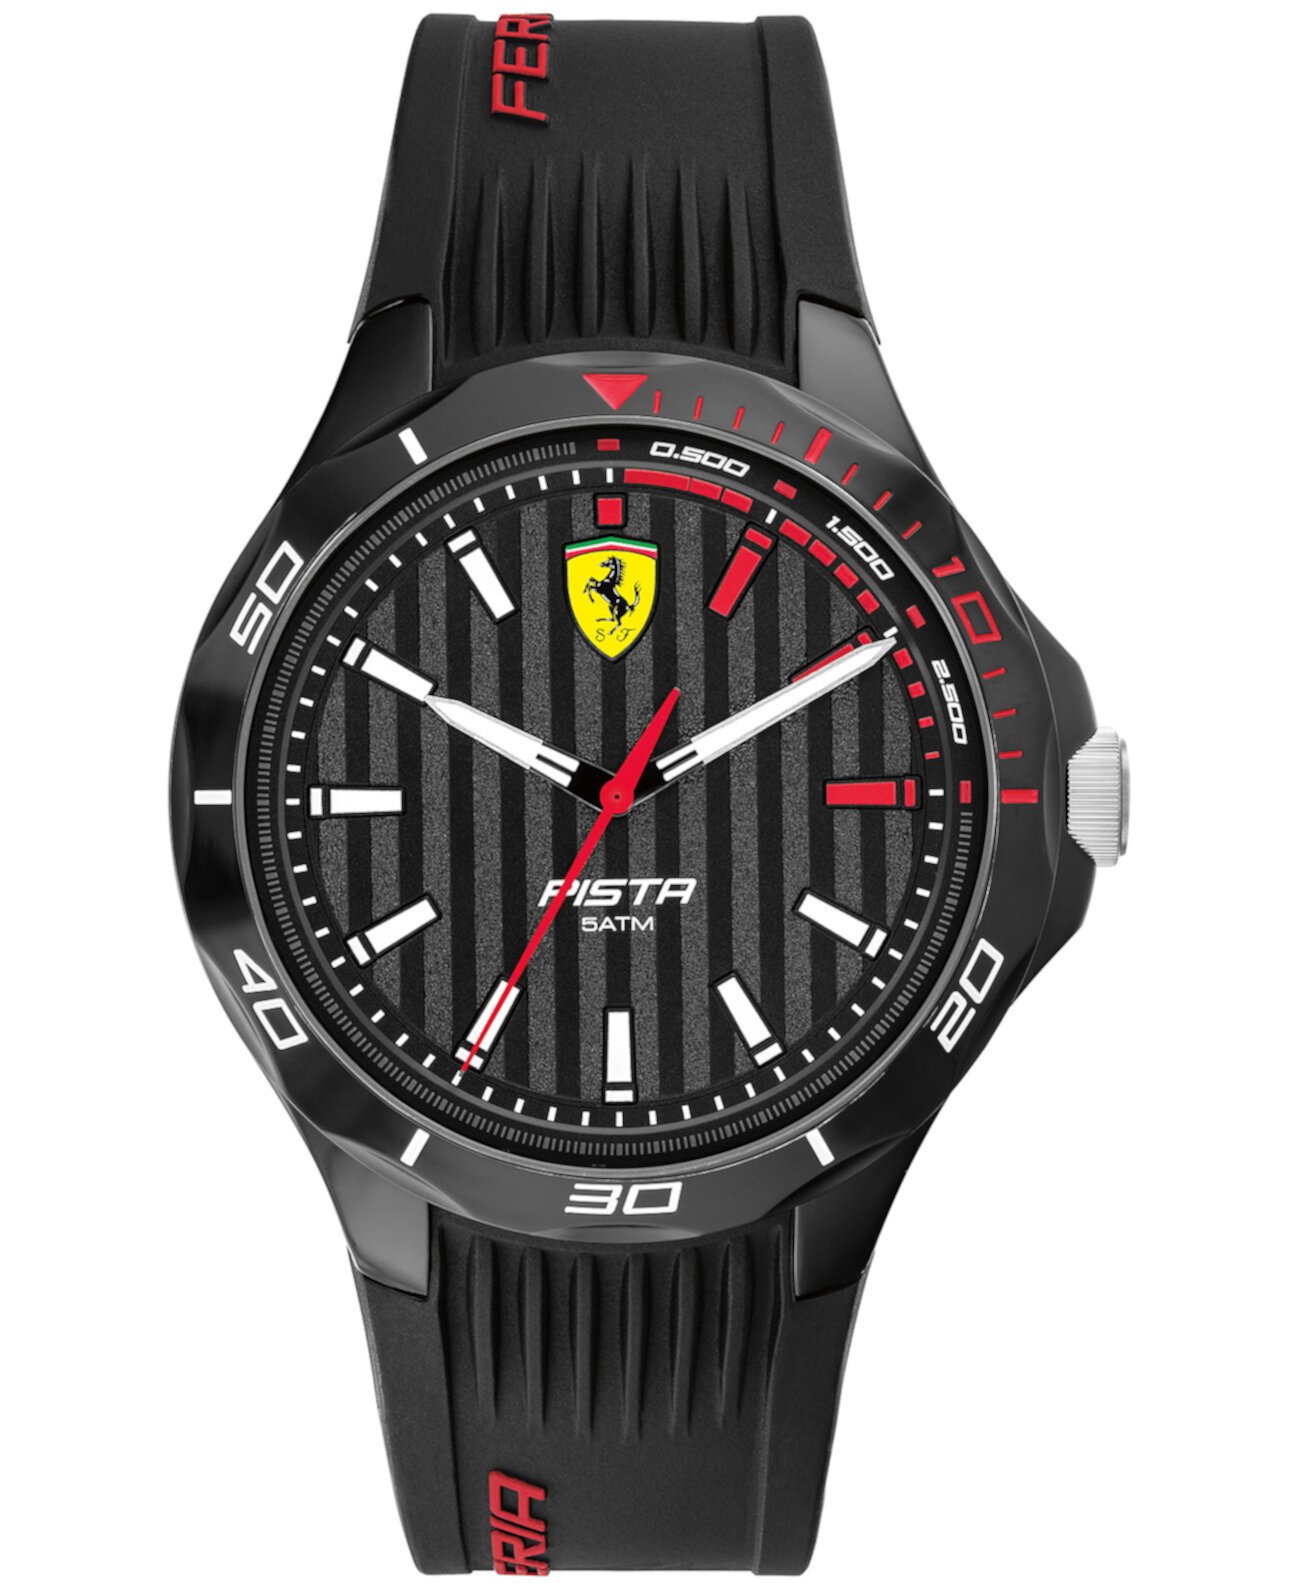 Мужские часы Pista с черным силиконовым ремешком, 44 мм Ferrari